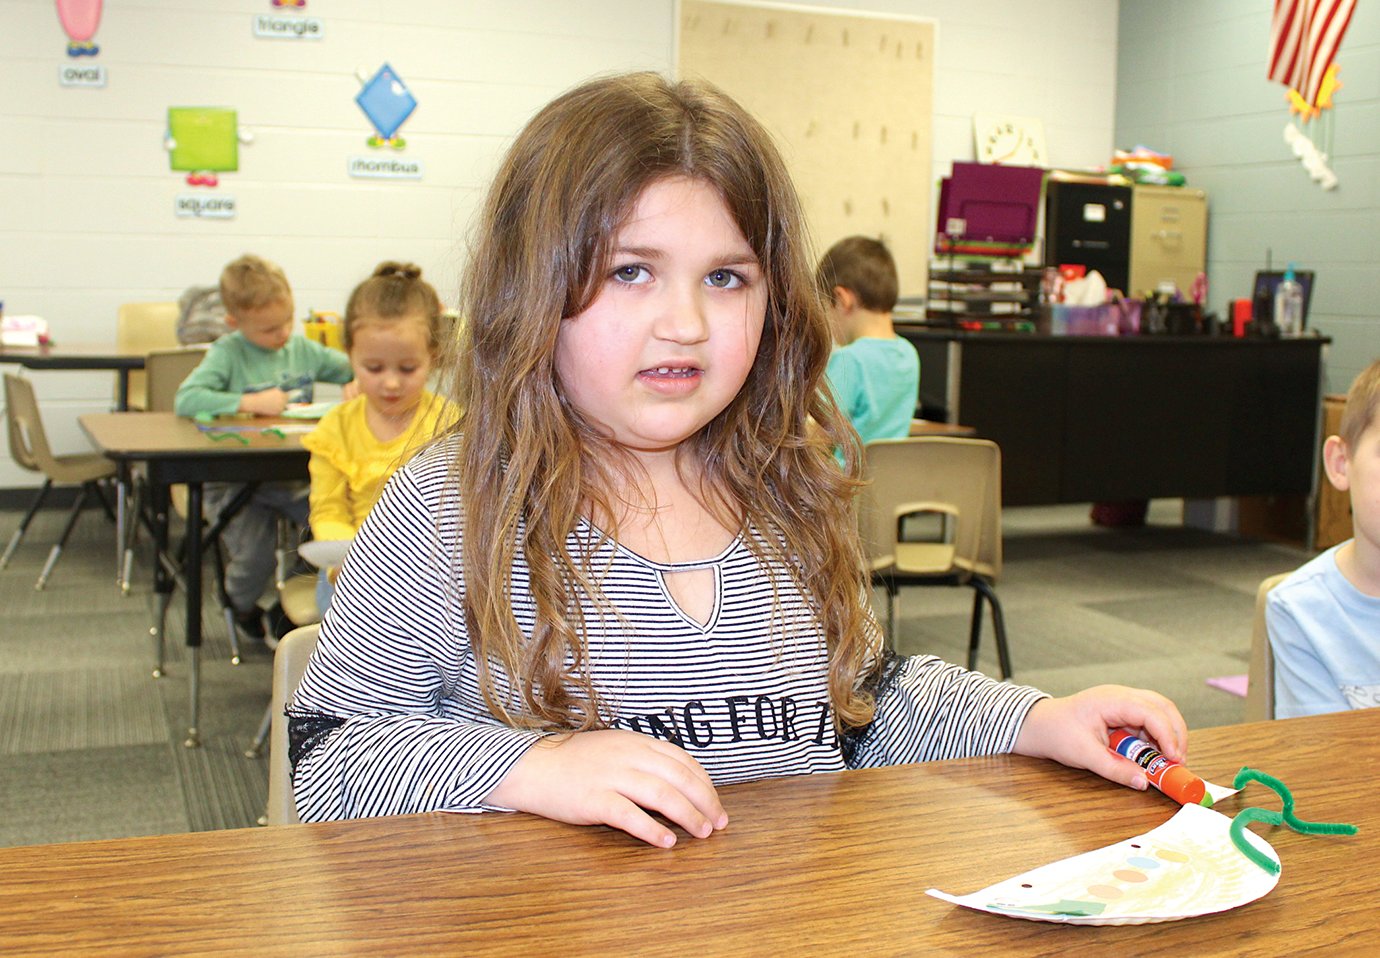 Little Mountie preschooler Paislie Barnes investigates the scene Thursday at New Market Elementary.